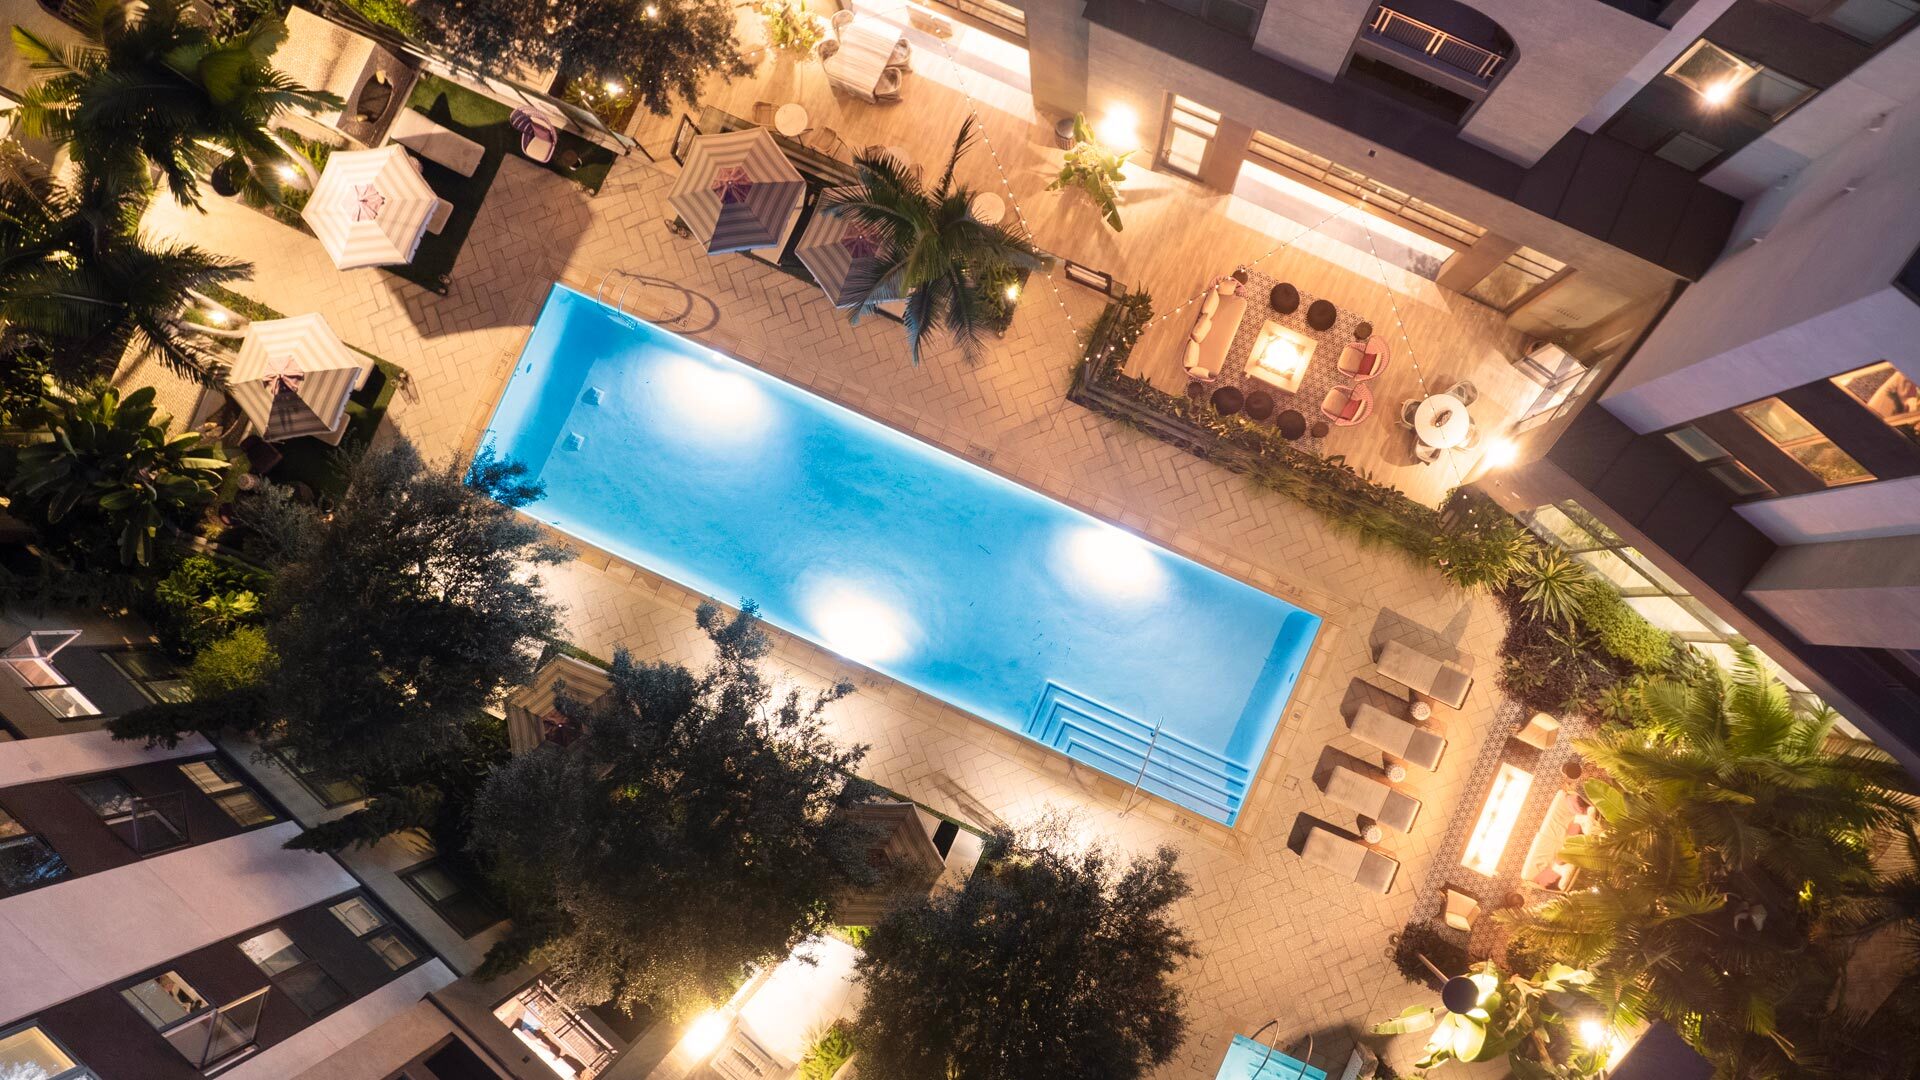 Vilara community resort style pool aerial view